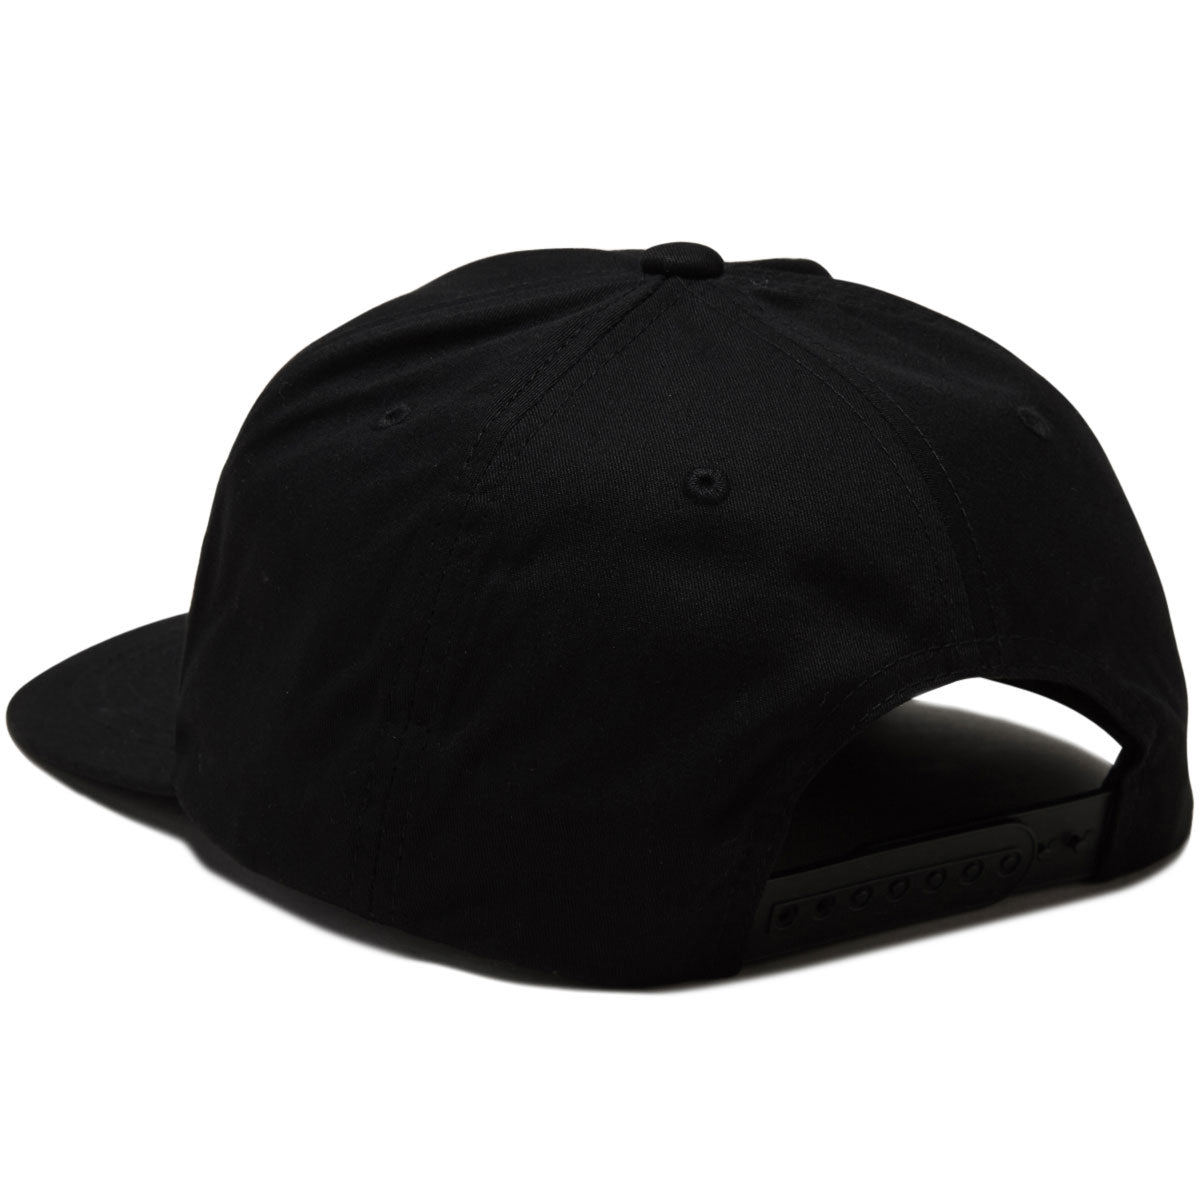 Royal Doggy Snapback Hat - Black image 2